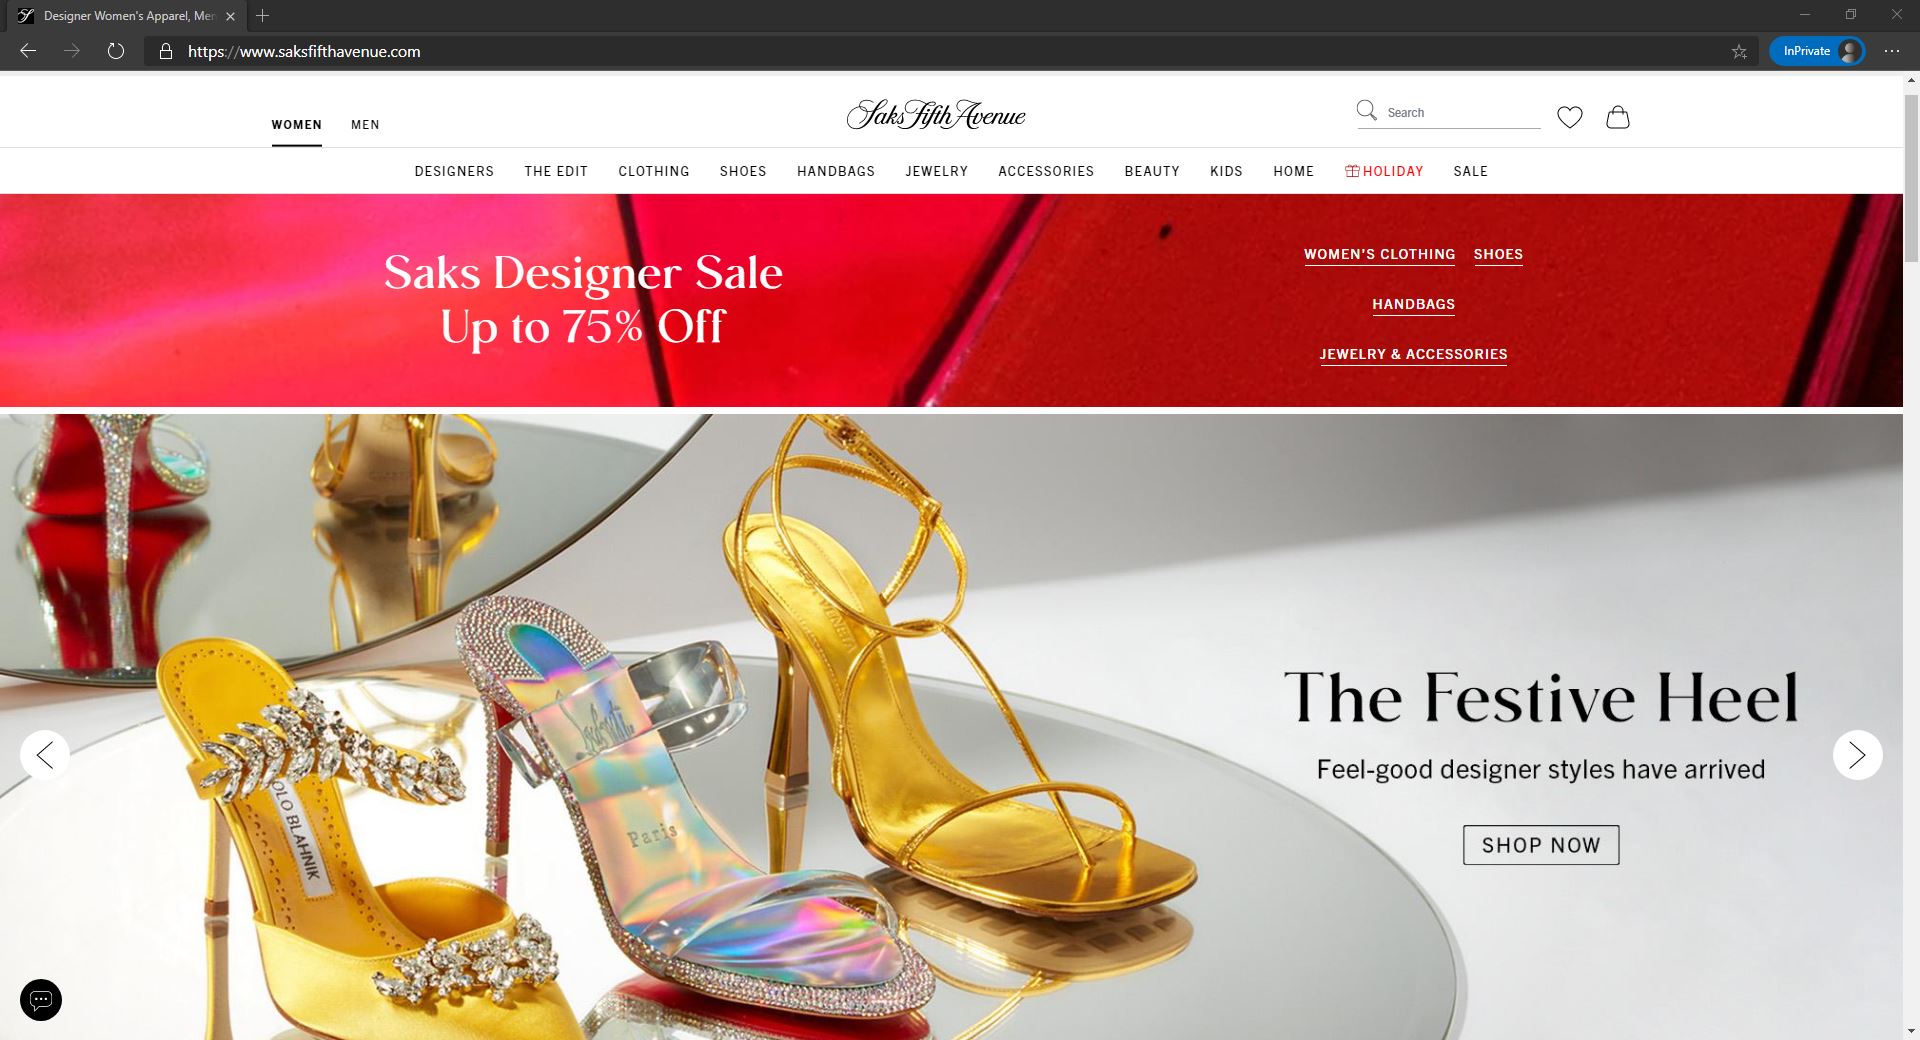 Saks Fifth Avenue website homepage